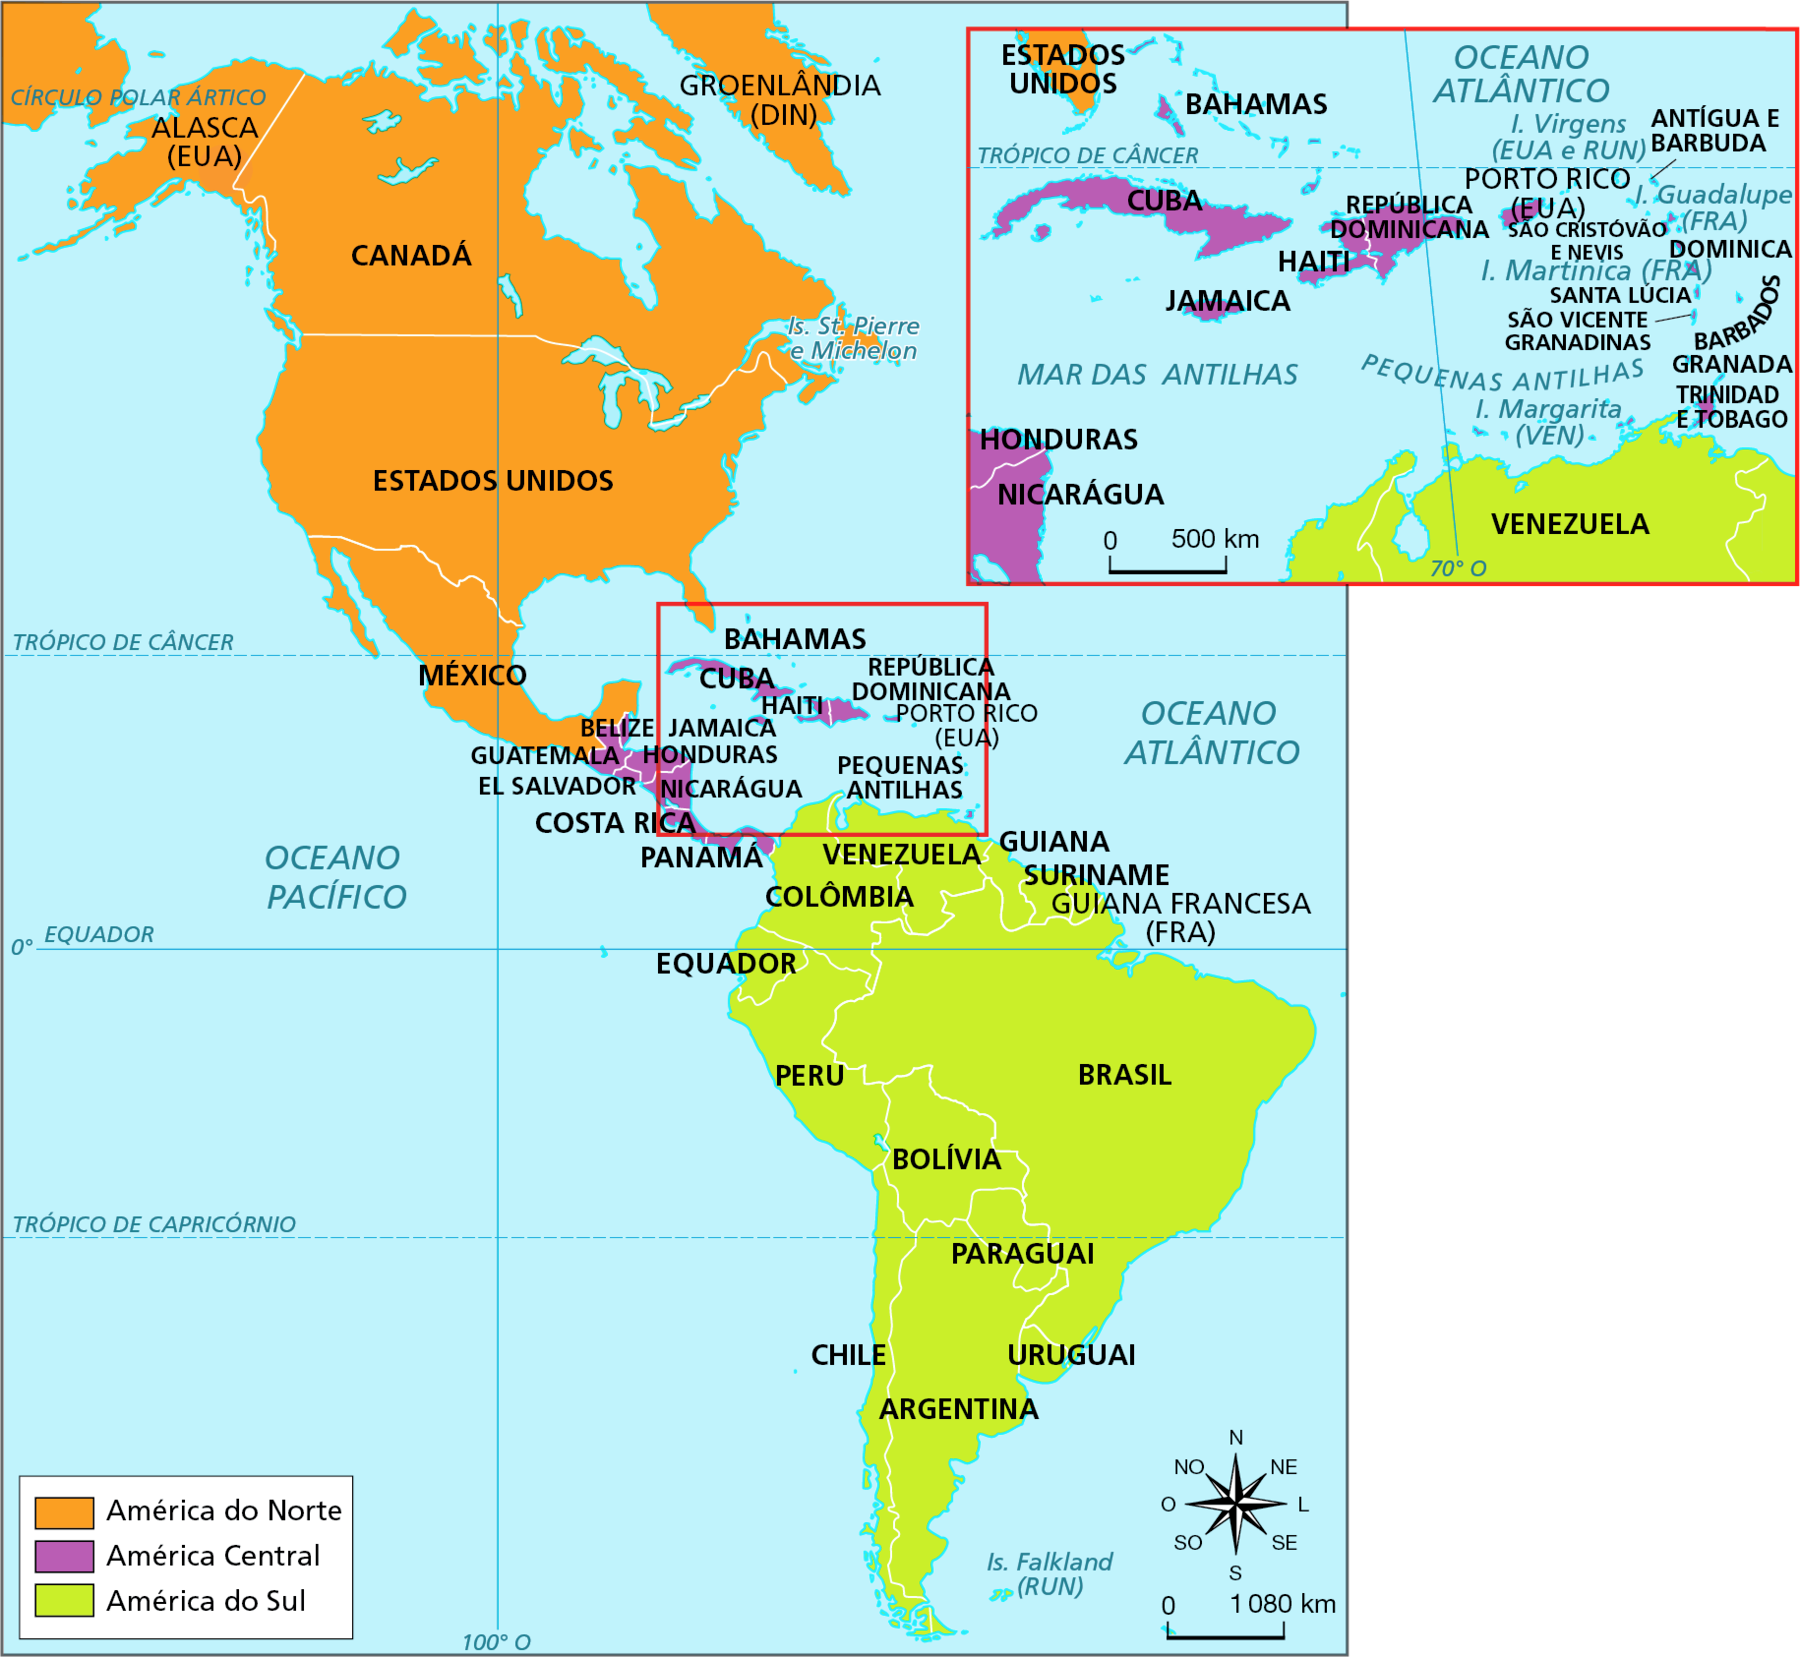 Mapa. Continente americano: Américas do Norte, Central e do Sul.  Mapa político da América com a identificação da América do Norte, da América Central e da América do Sul. América do Norte, representada em laranja: engloba Groenlândia (Dinamarca),  Alasca (Estados Unidos), Canadá, Estados Unidos e México.  A maior parte do território da América do Norte se localiza entre o Círculo Polar Ártico e o Trópico de Câncer.  América Central, em roxo: Belize, Guatemala, Honduras, El Salvador, Nicarágua, Costa Rica, Panamá, Bahamas, Cuba,  República Dominicana, Haiti, Jamaica, Porto Rico (Estados Unidos), São Cristóvão e Nevis, Antígua e Barbuda, Dominica, Santa Lúcia, São Vicente Granadinas, Barbados, Granada e Trinidad e Tobago. A América Central se localiza entre o Trópico de Câncer e o Equador. América do Sul, em verde: Venezuela, Guiana, Suriname, Guiana Francesa (França), Colômbia, Equador, Peru, Bolívia, Paraguai, Chile, Argentina e Uruguai.  A maior parte do território de Colômbia e os territórios de Venezuela, Guiana, Suriname e Guiana Francesa se localiza entre o Trópico de Câncer e o Equador. O restante da América do Sul encontra-se entre o Equador e o Círculo Polar Antártico.    À direita, rosa dos ventos e escala de 0 a 1.080 quilômetros.